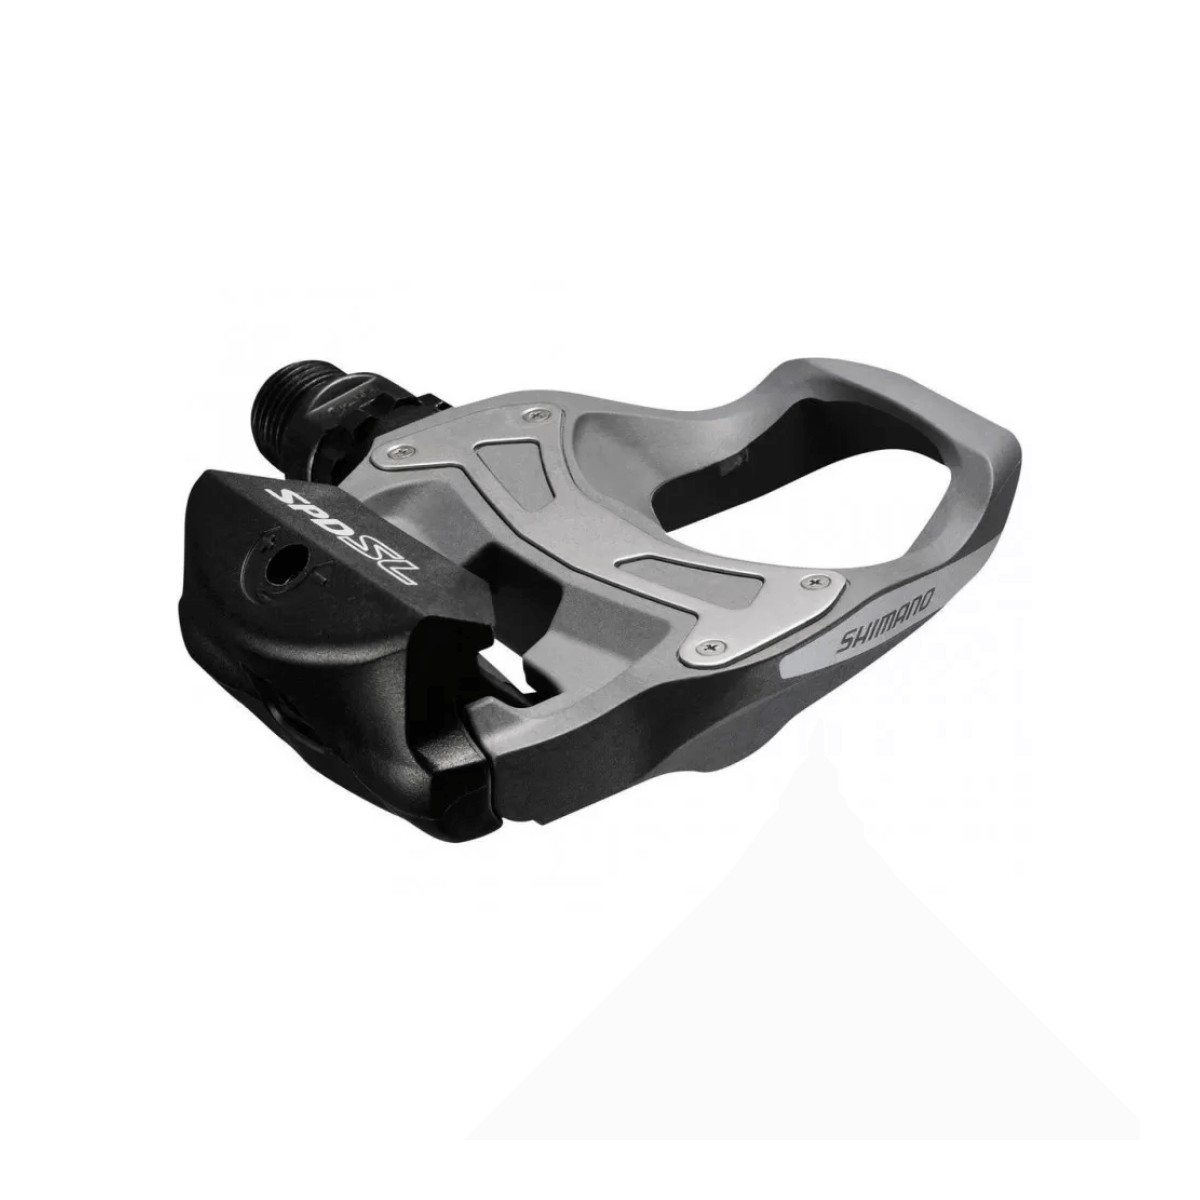 Shimano R550 SPD-SL Pedals Black